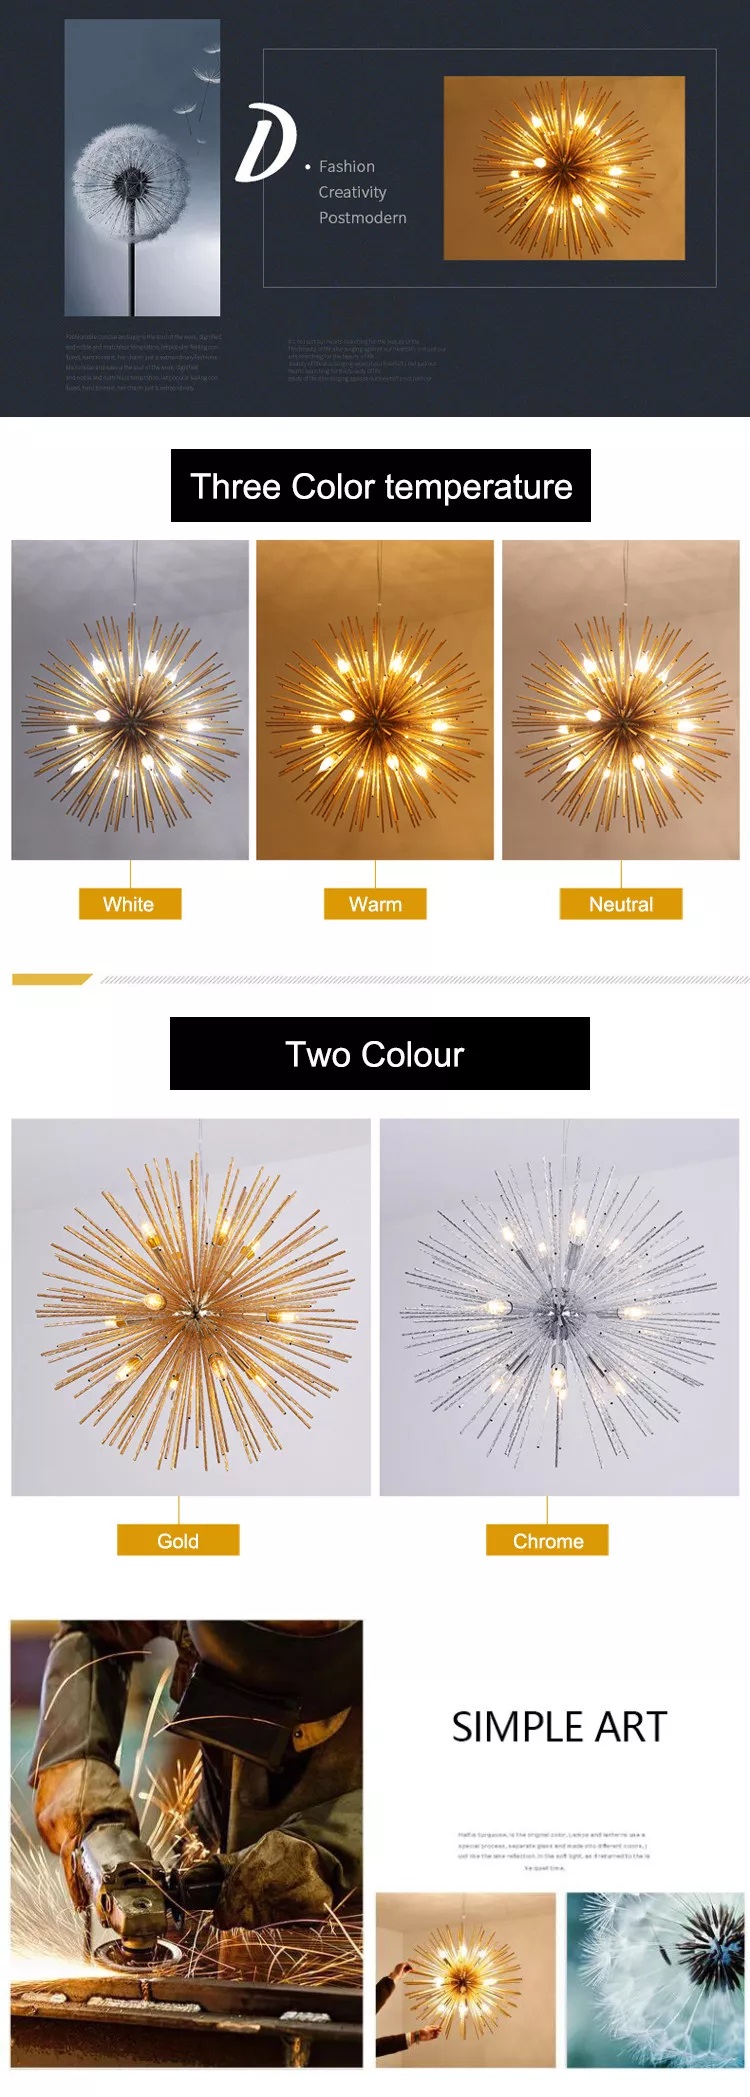 Dandelion Chandelier - Nordic SparkBall - Starburst - Sputnik - Pendant Lighting - Modern Contemporary Artistic Lighting